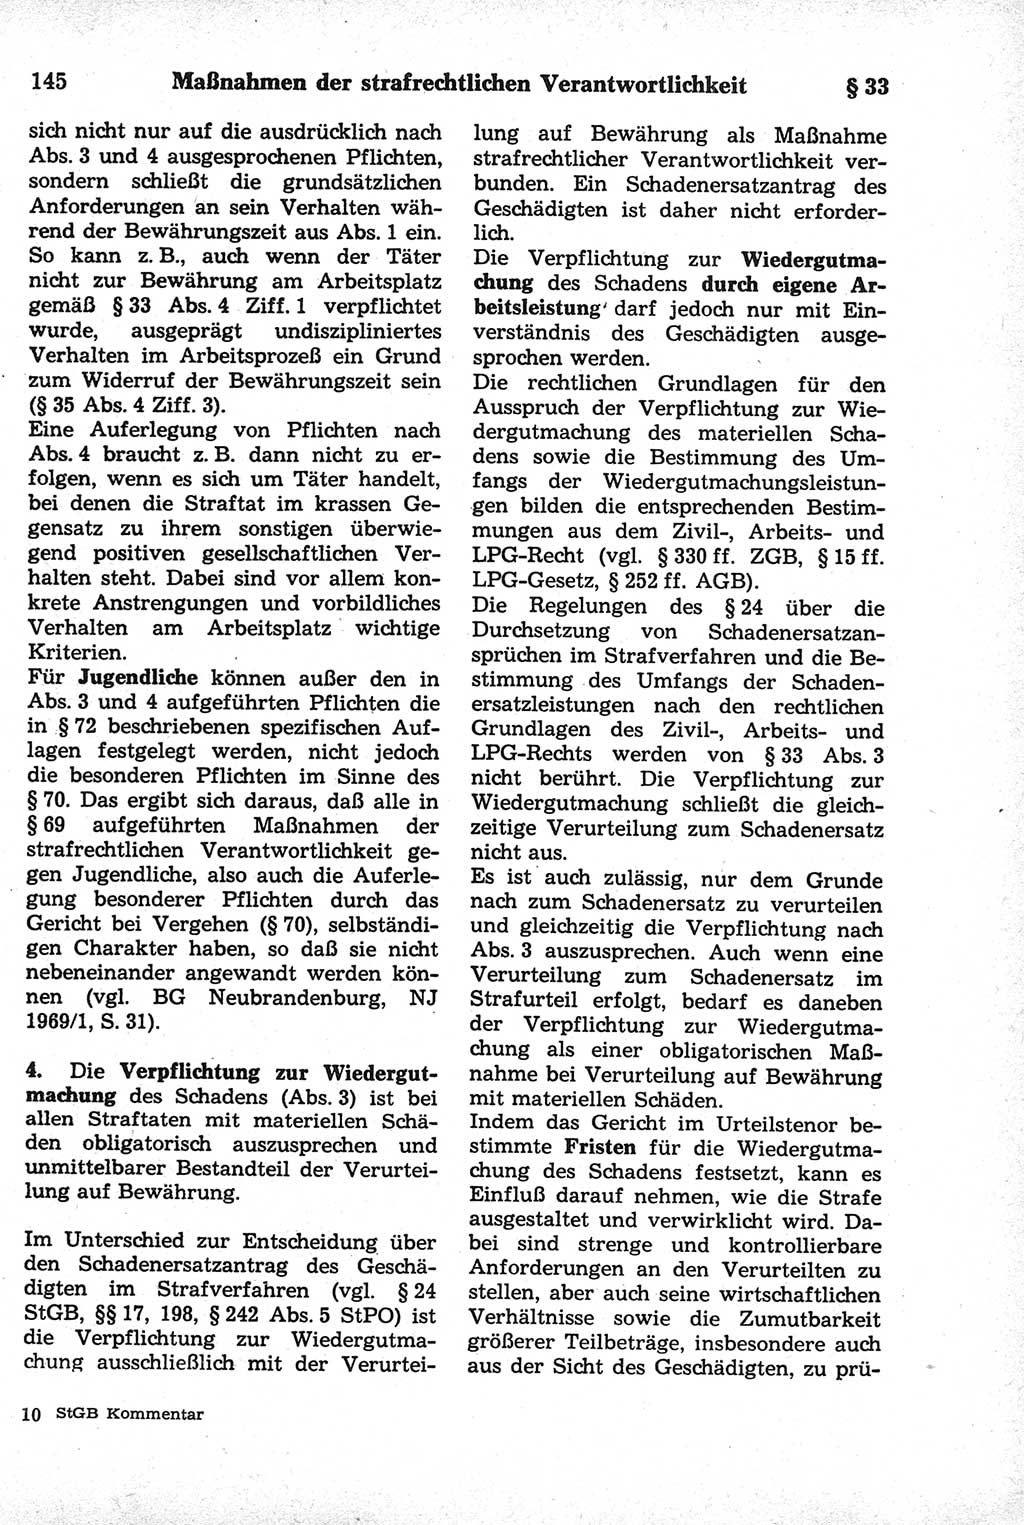 Strafrecht der Deutschen Demokratischen Republik (DDR), Kommentar zum Strafgesetzbuch (StGB) 1981, Seite 145 (Strafr. DDR Komm. StGB 1981, S. 145)